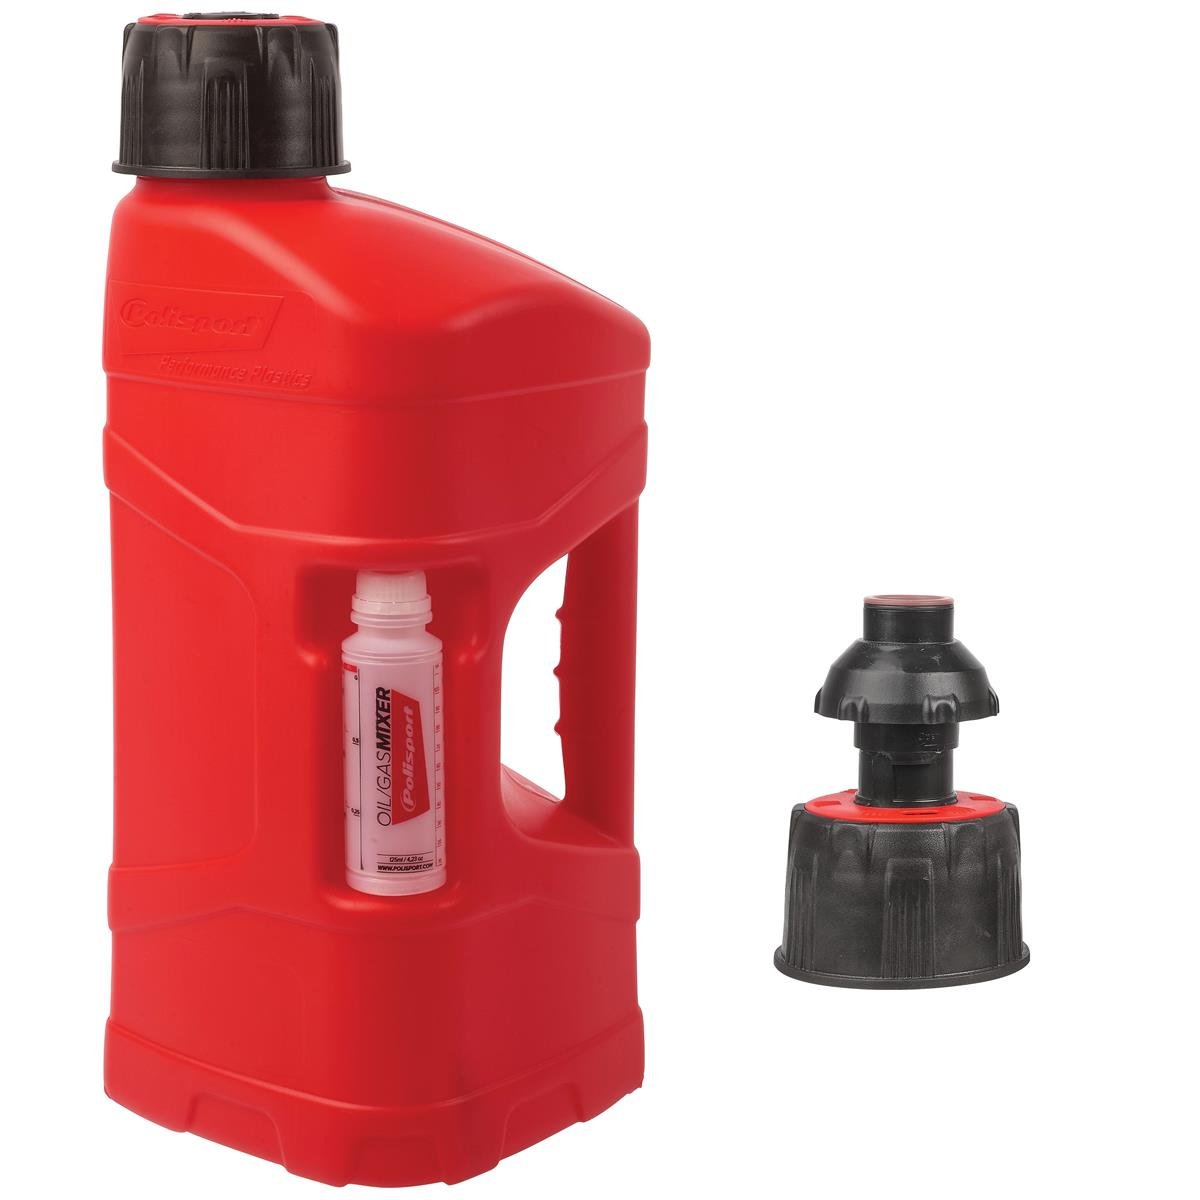 Polisport Benzinkanister ProOctane mit Schnelltanksystem, 10 L, Rot